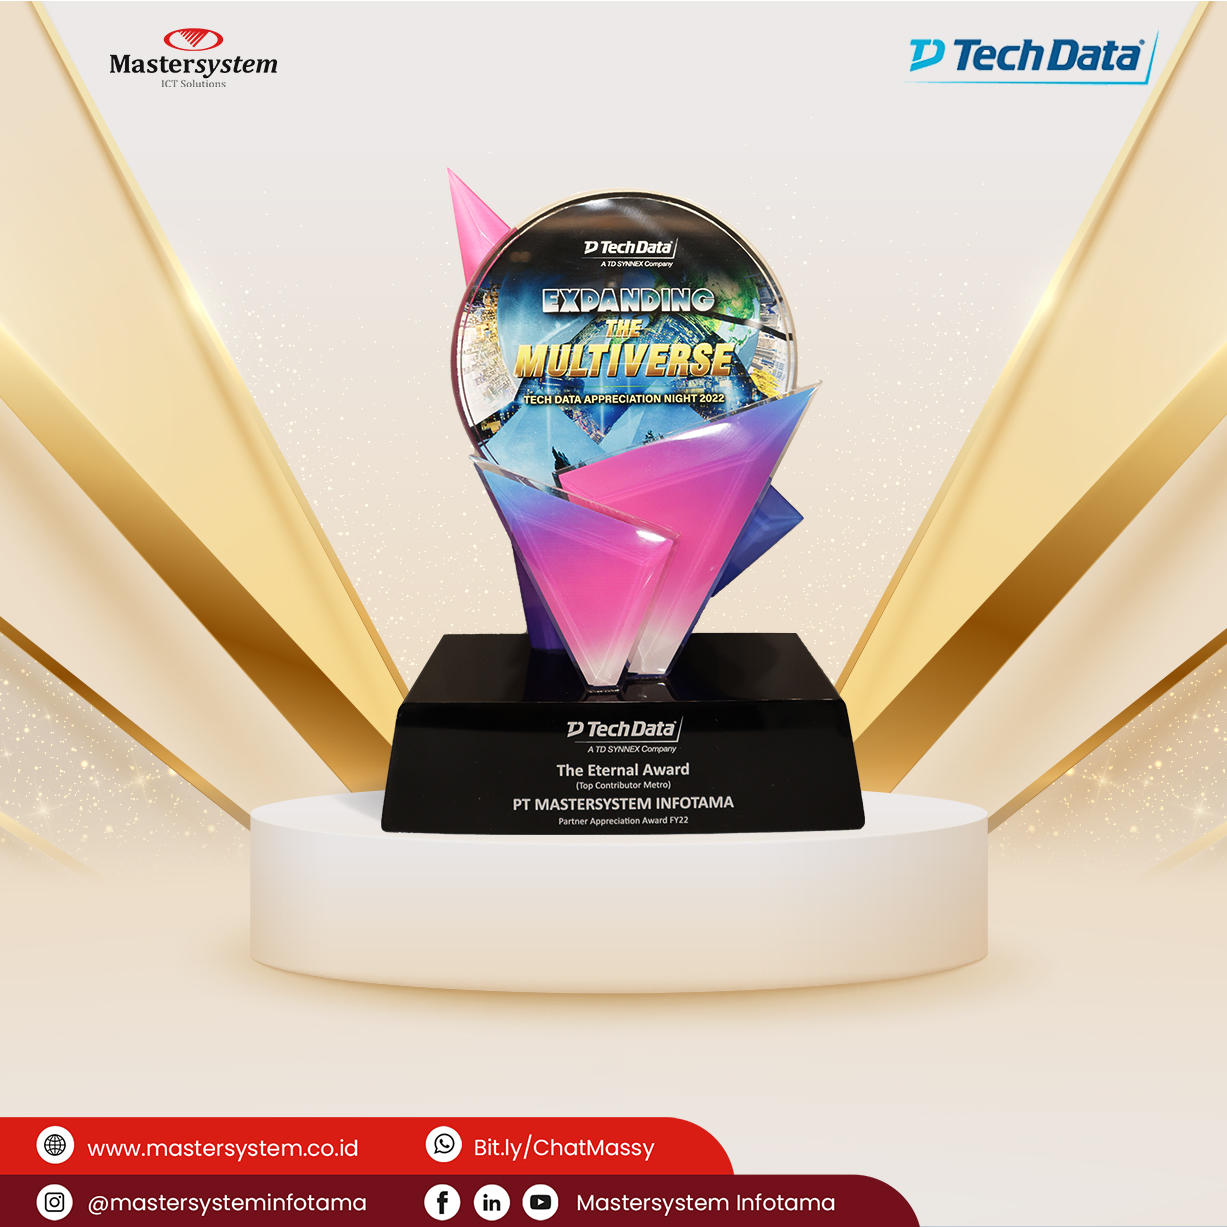 Bukti Kontribusi Majukan Teknologi, Mastersystem Raih Penghargaan dari Tech Data!